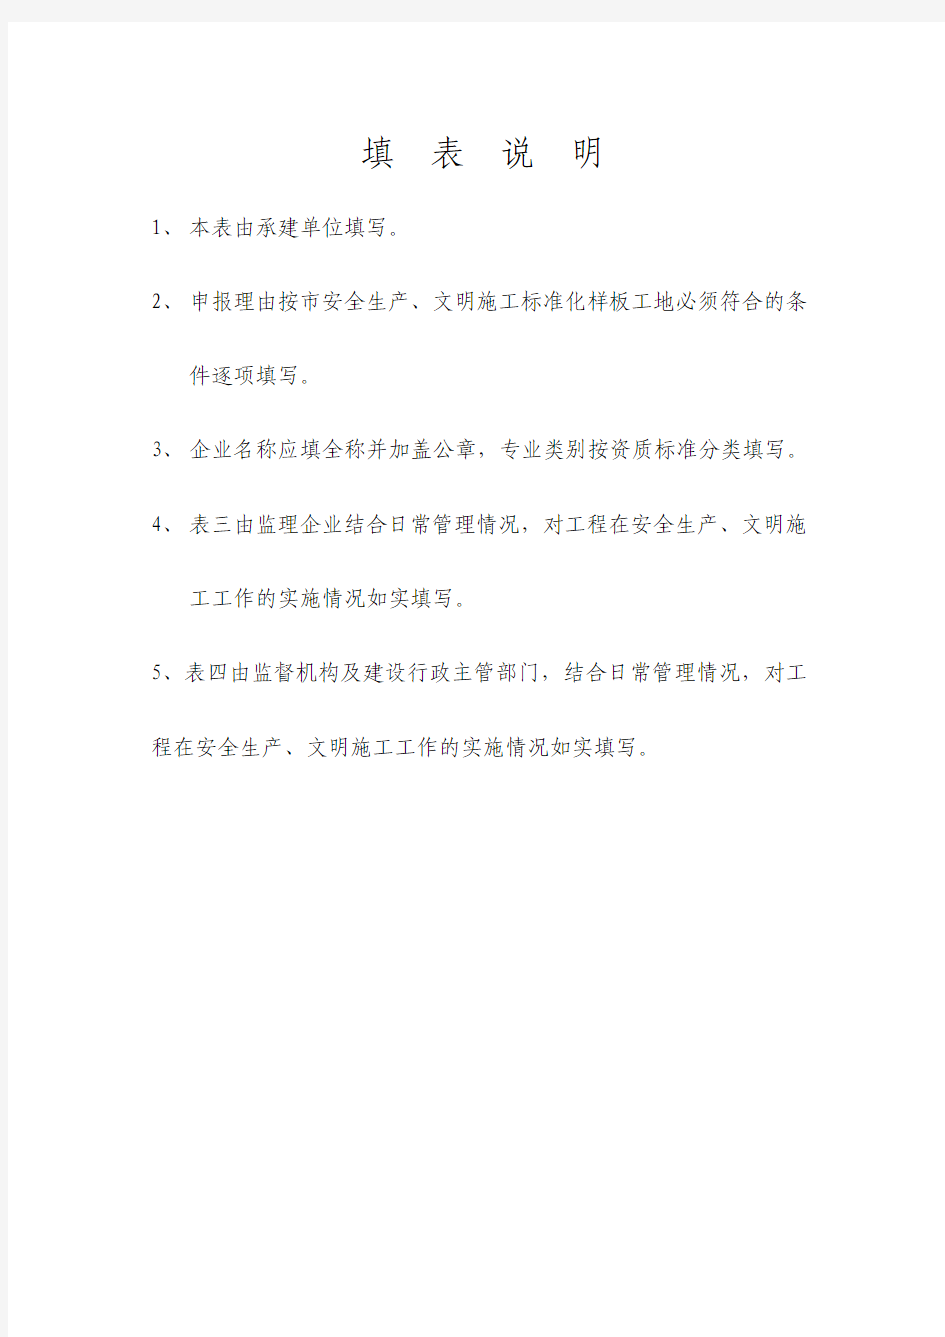 杭州市建设工程安全生产文明施工标准化样板工地申报表